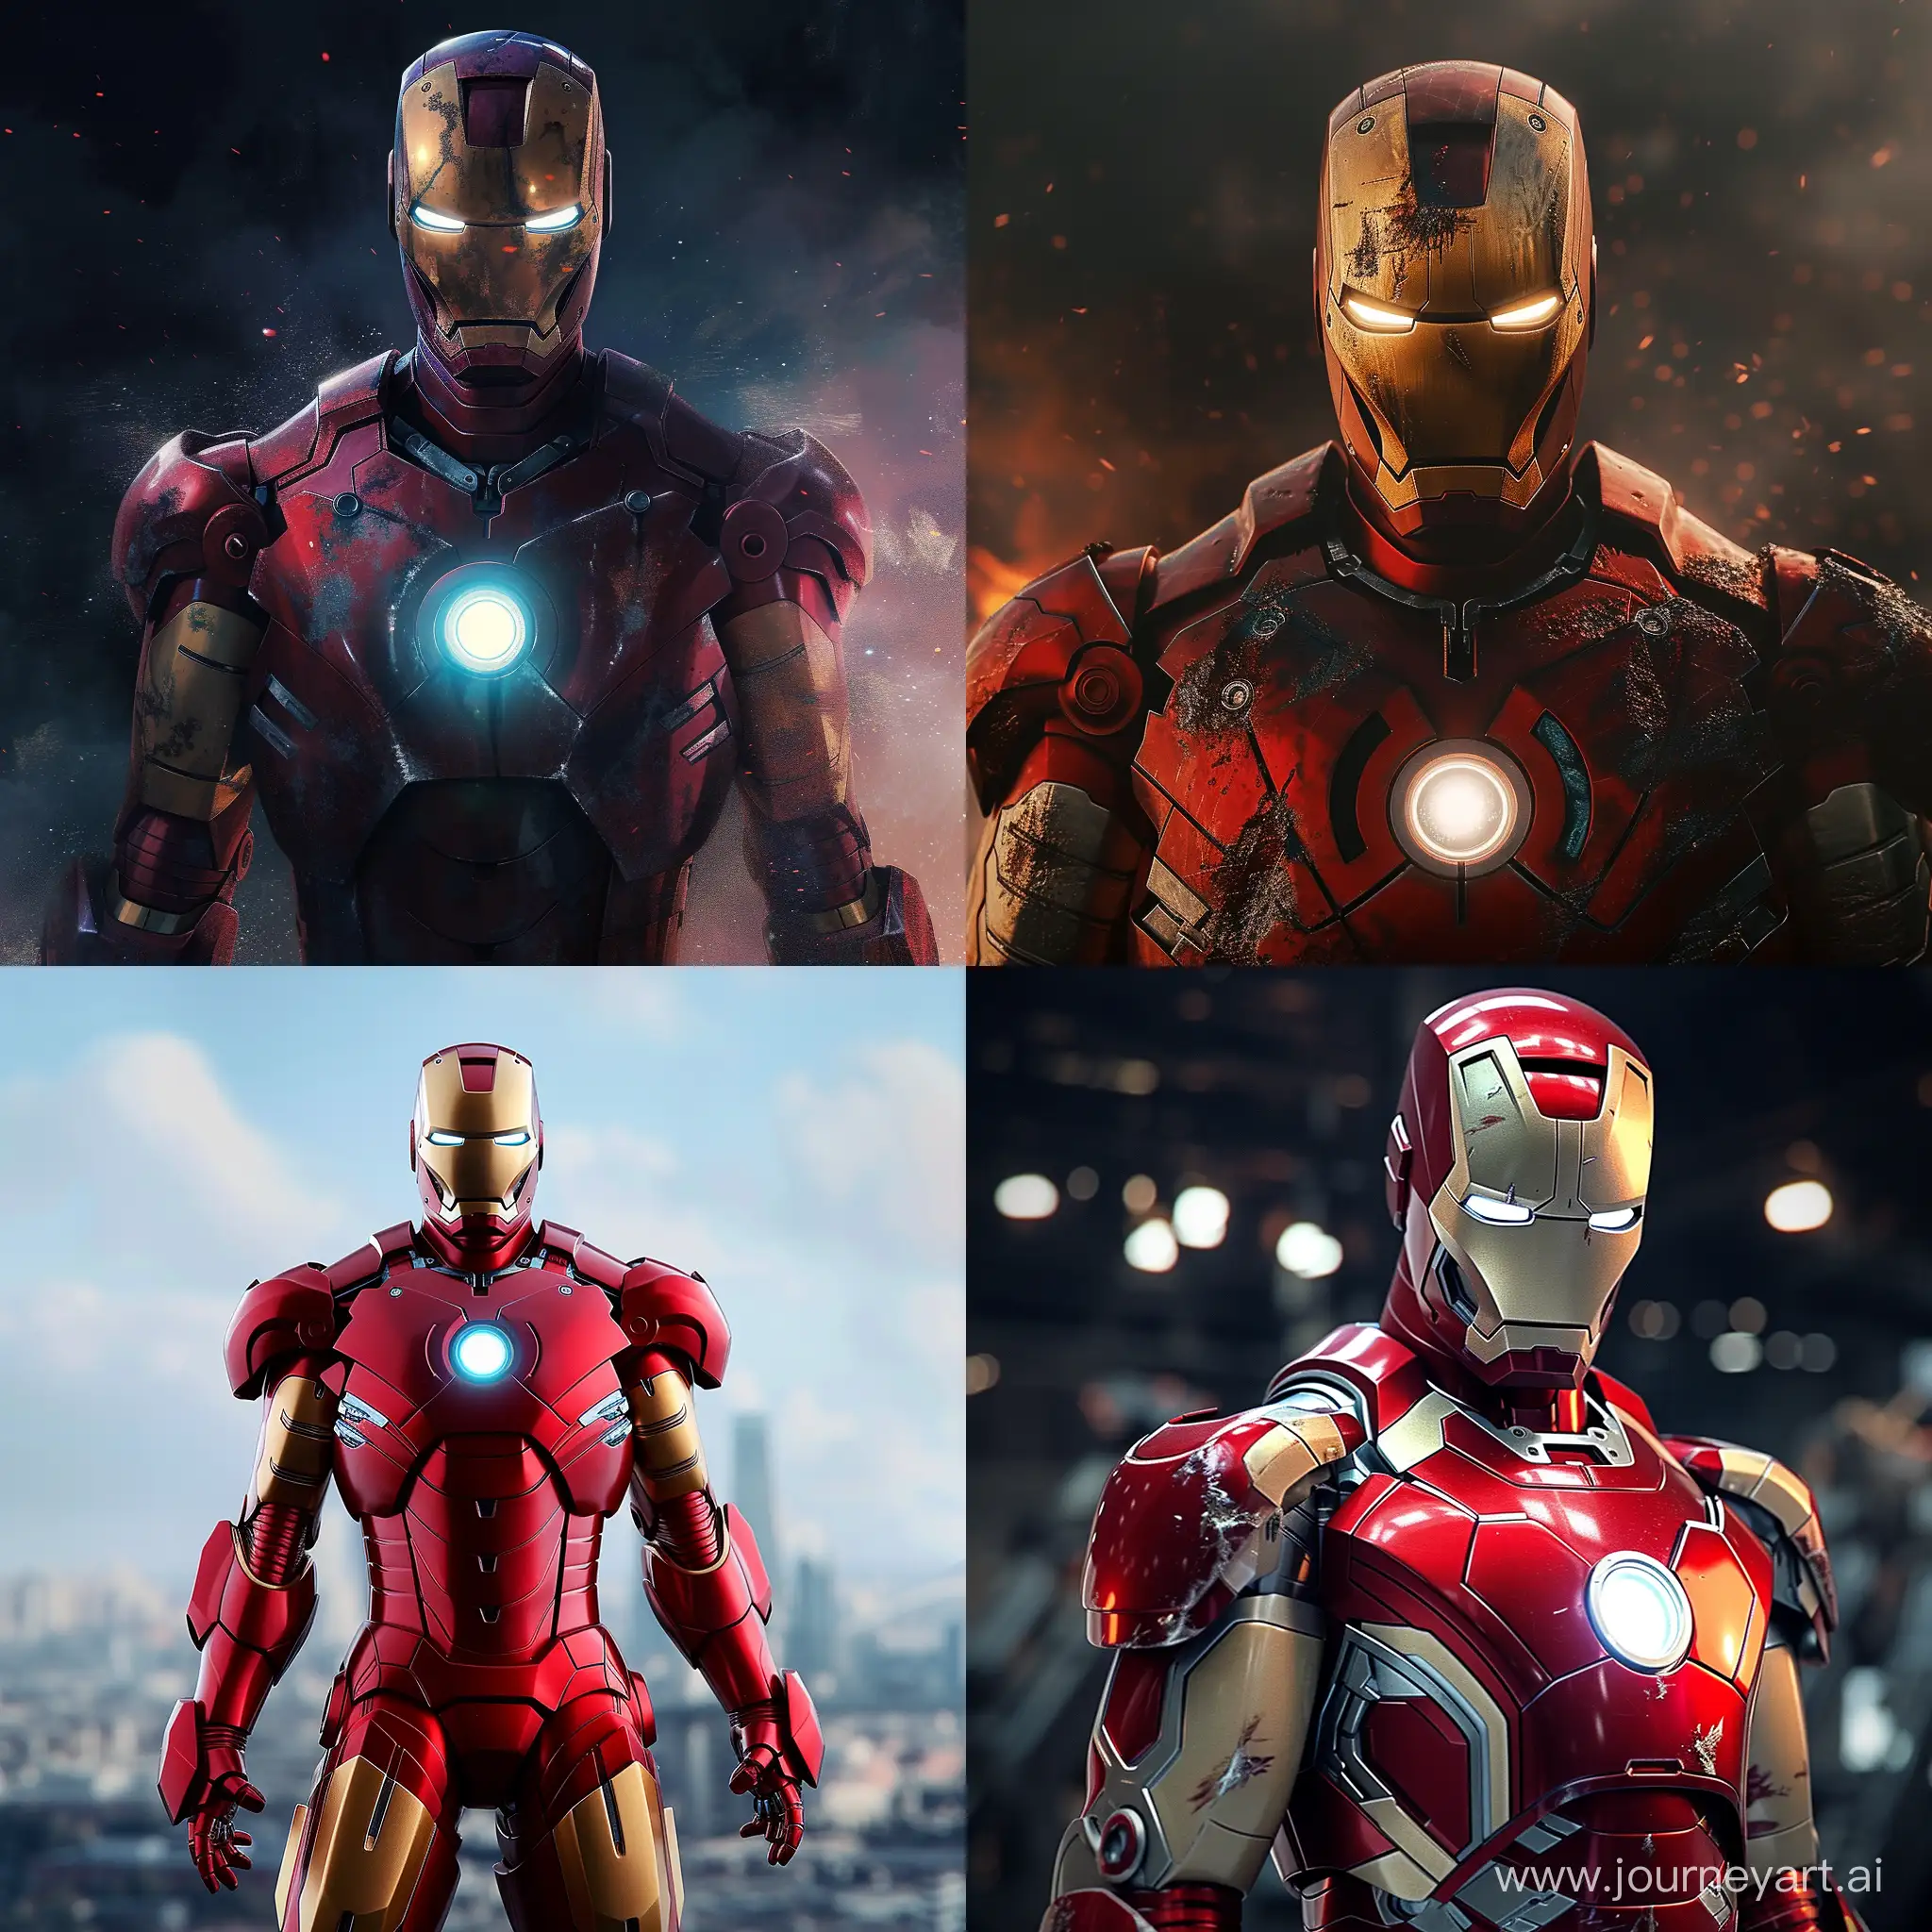 Futuristic-Iron-Man-Suit-Version-6-HighTech-Armor-Design